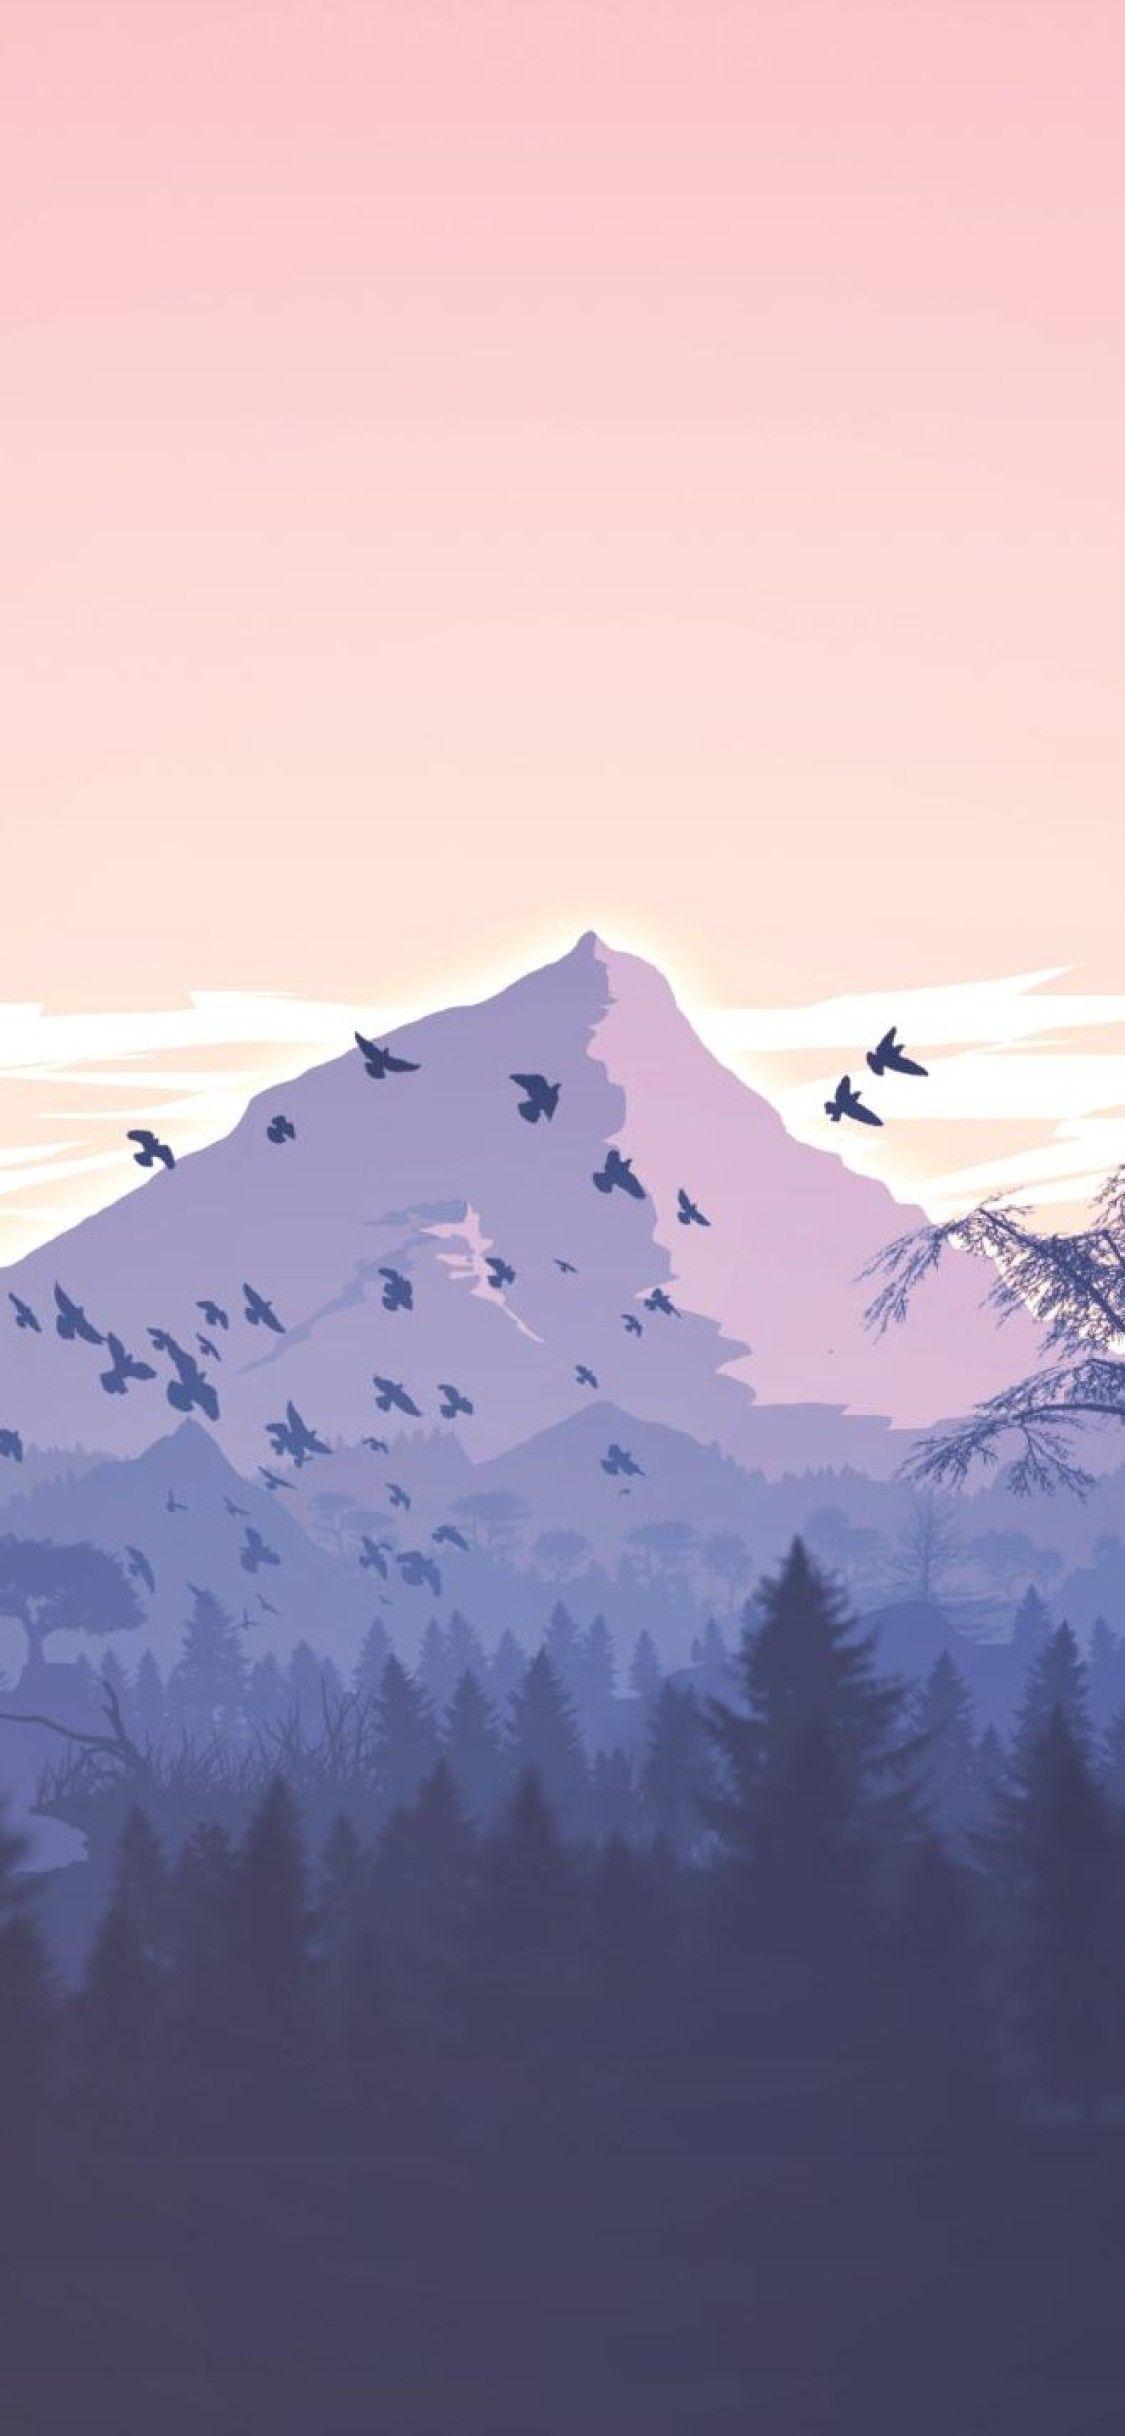 Minimalist Mountain iPhone Wallpapers - Top Free Minimalist Mountain ...